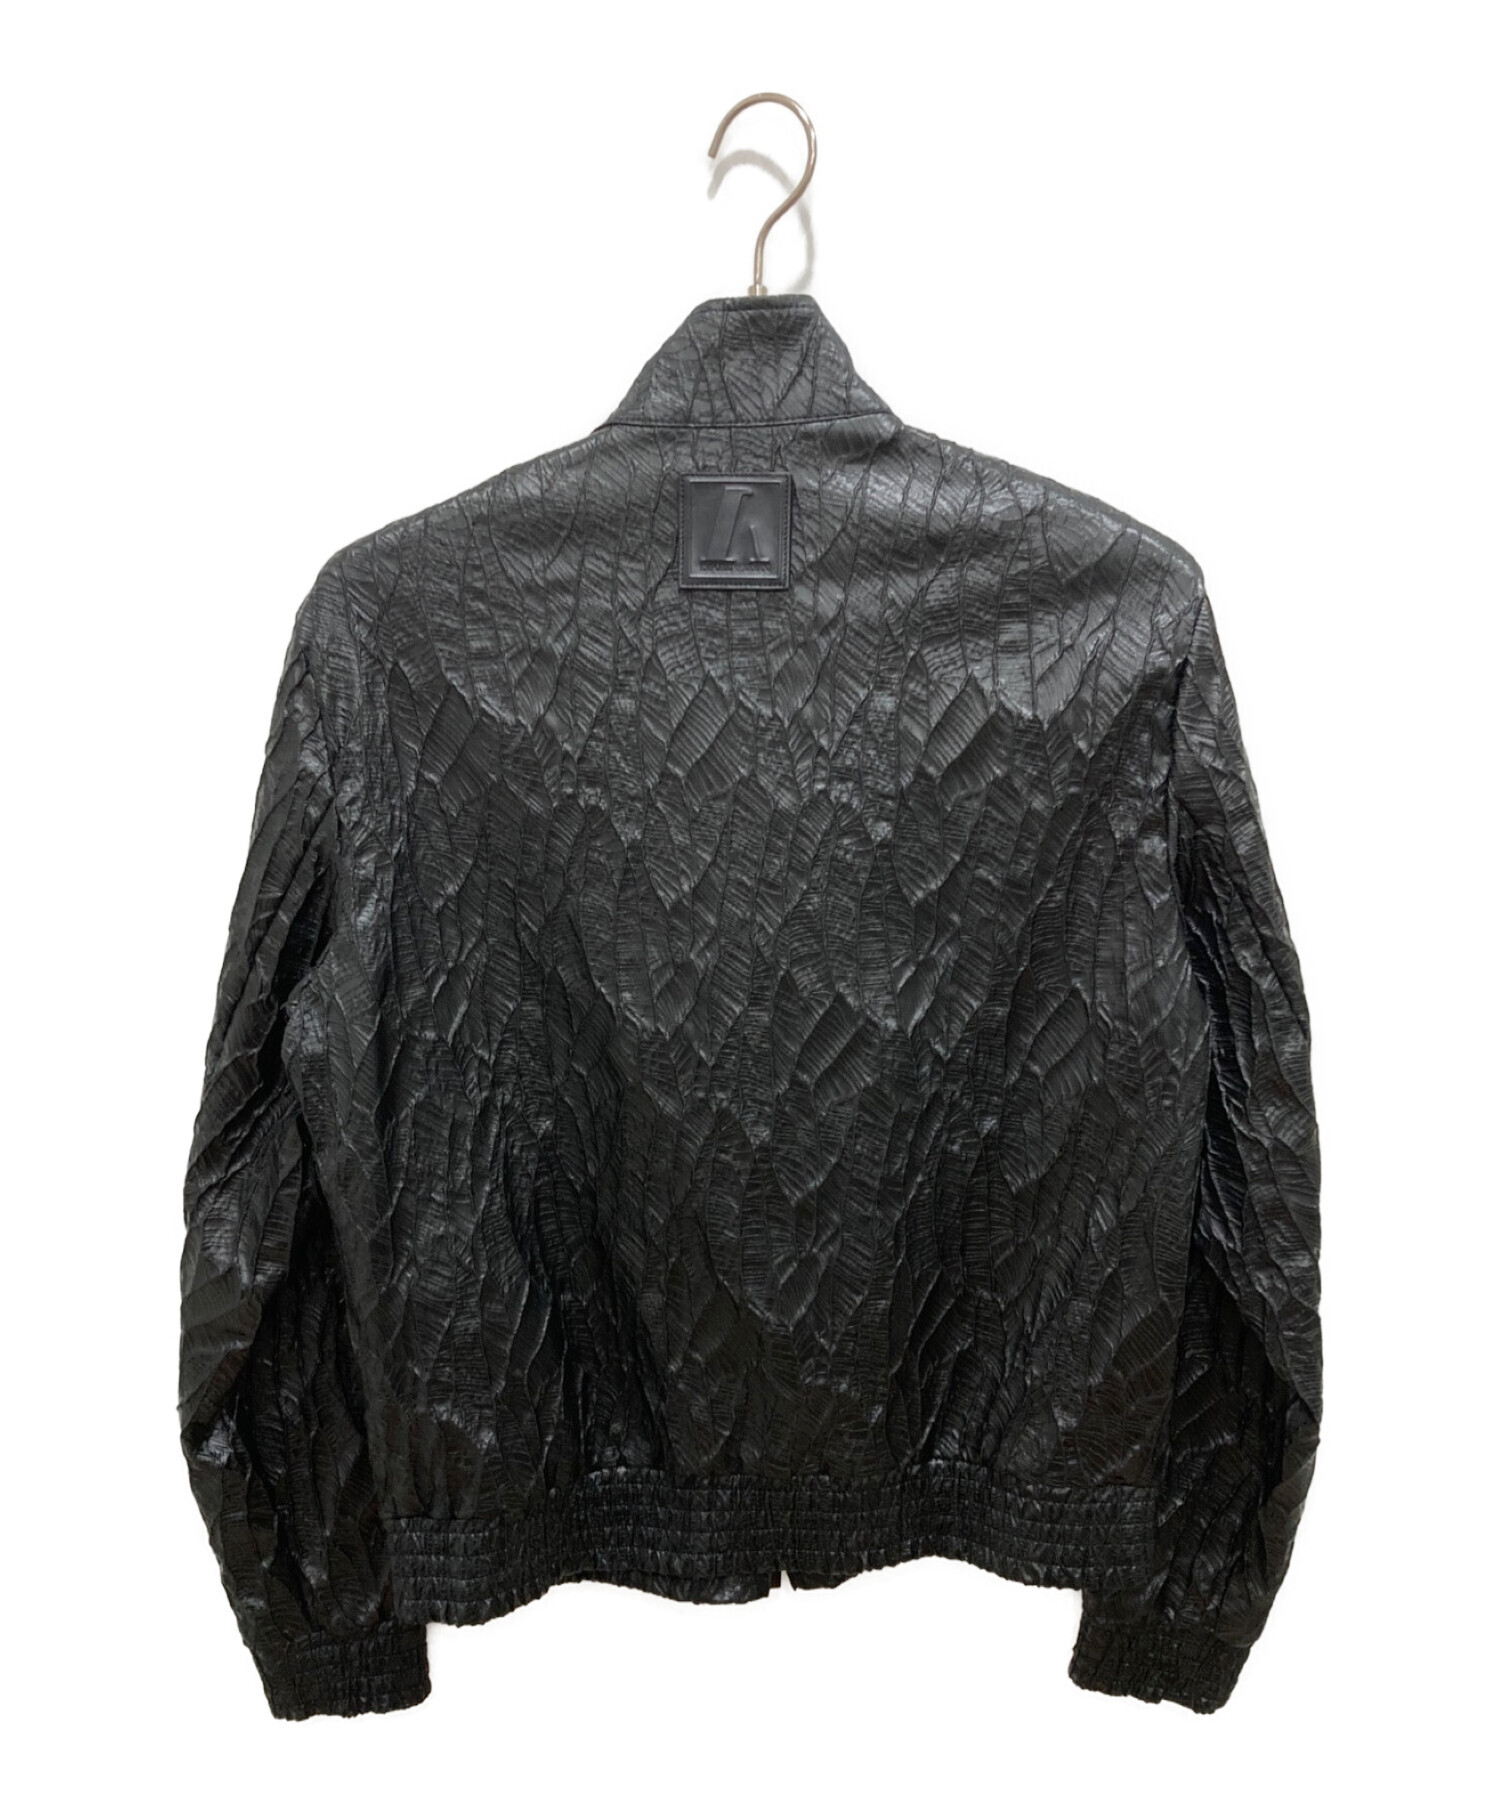 EMPORIO ARMANI (エンポリオアルマーニ) ジップジャケット ブラック サイズ:size 50